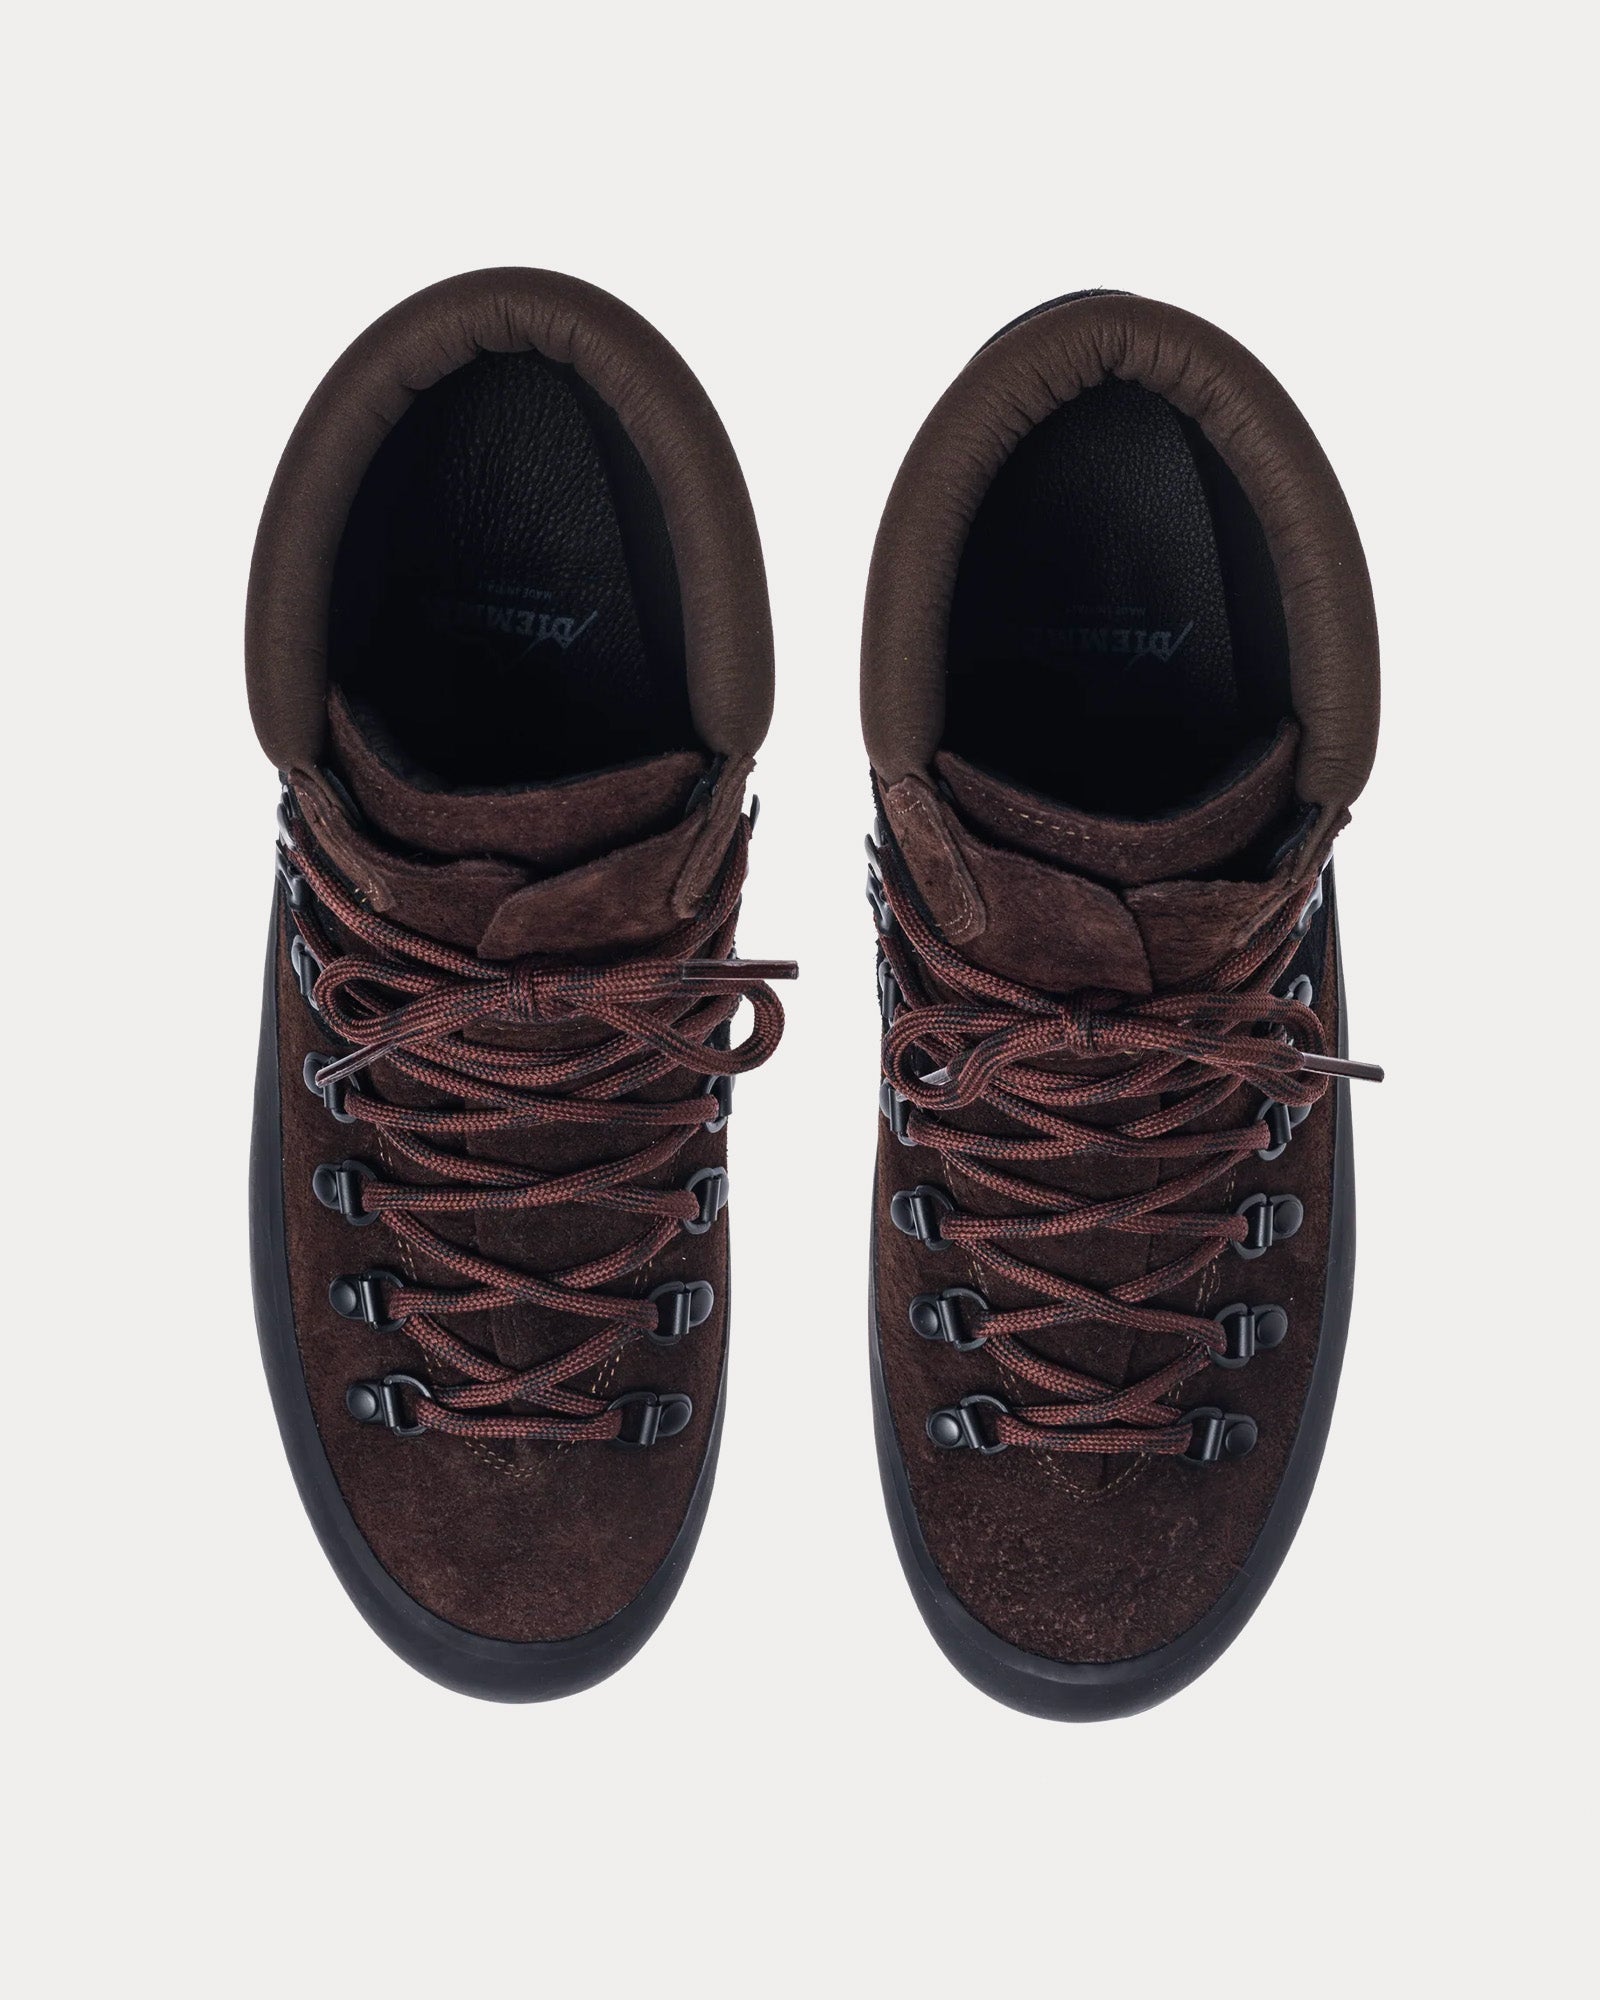 Diemme - Rosset Leather Oak Brown Boots